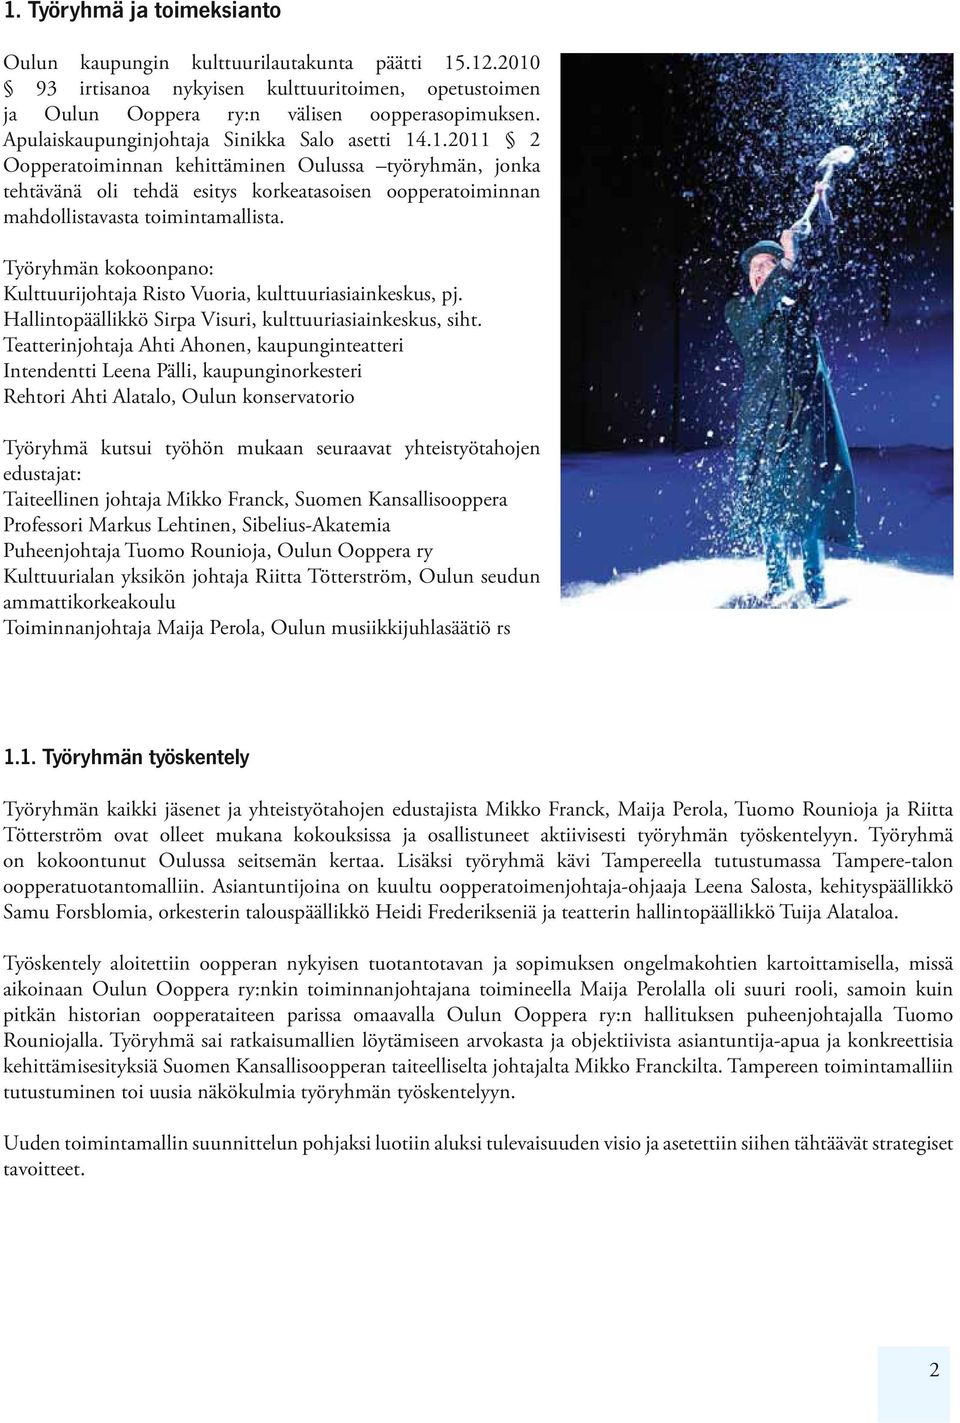 .1.2011 2 Oopperatoiminnan kehittäminen Oulussa työryhmän, jonka tehtävänä oli tehdä esitys korkeatasoisen oopperatoiminnan mahdollistavasta toimintamallista.